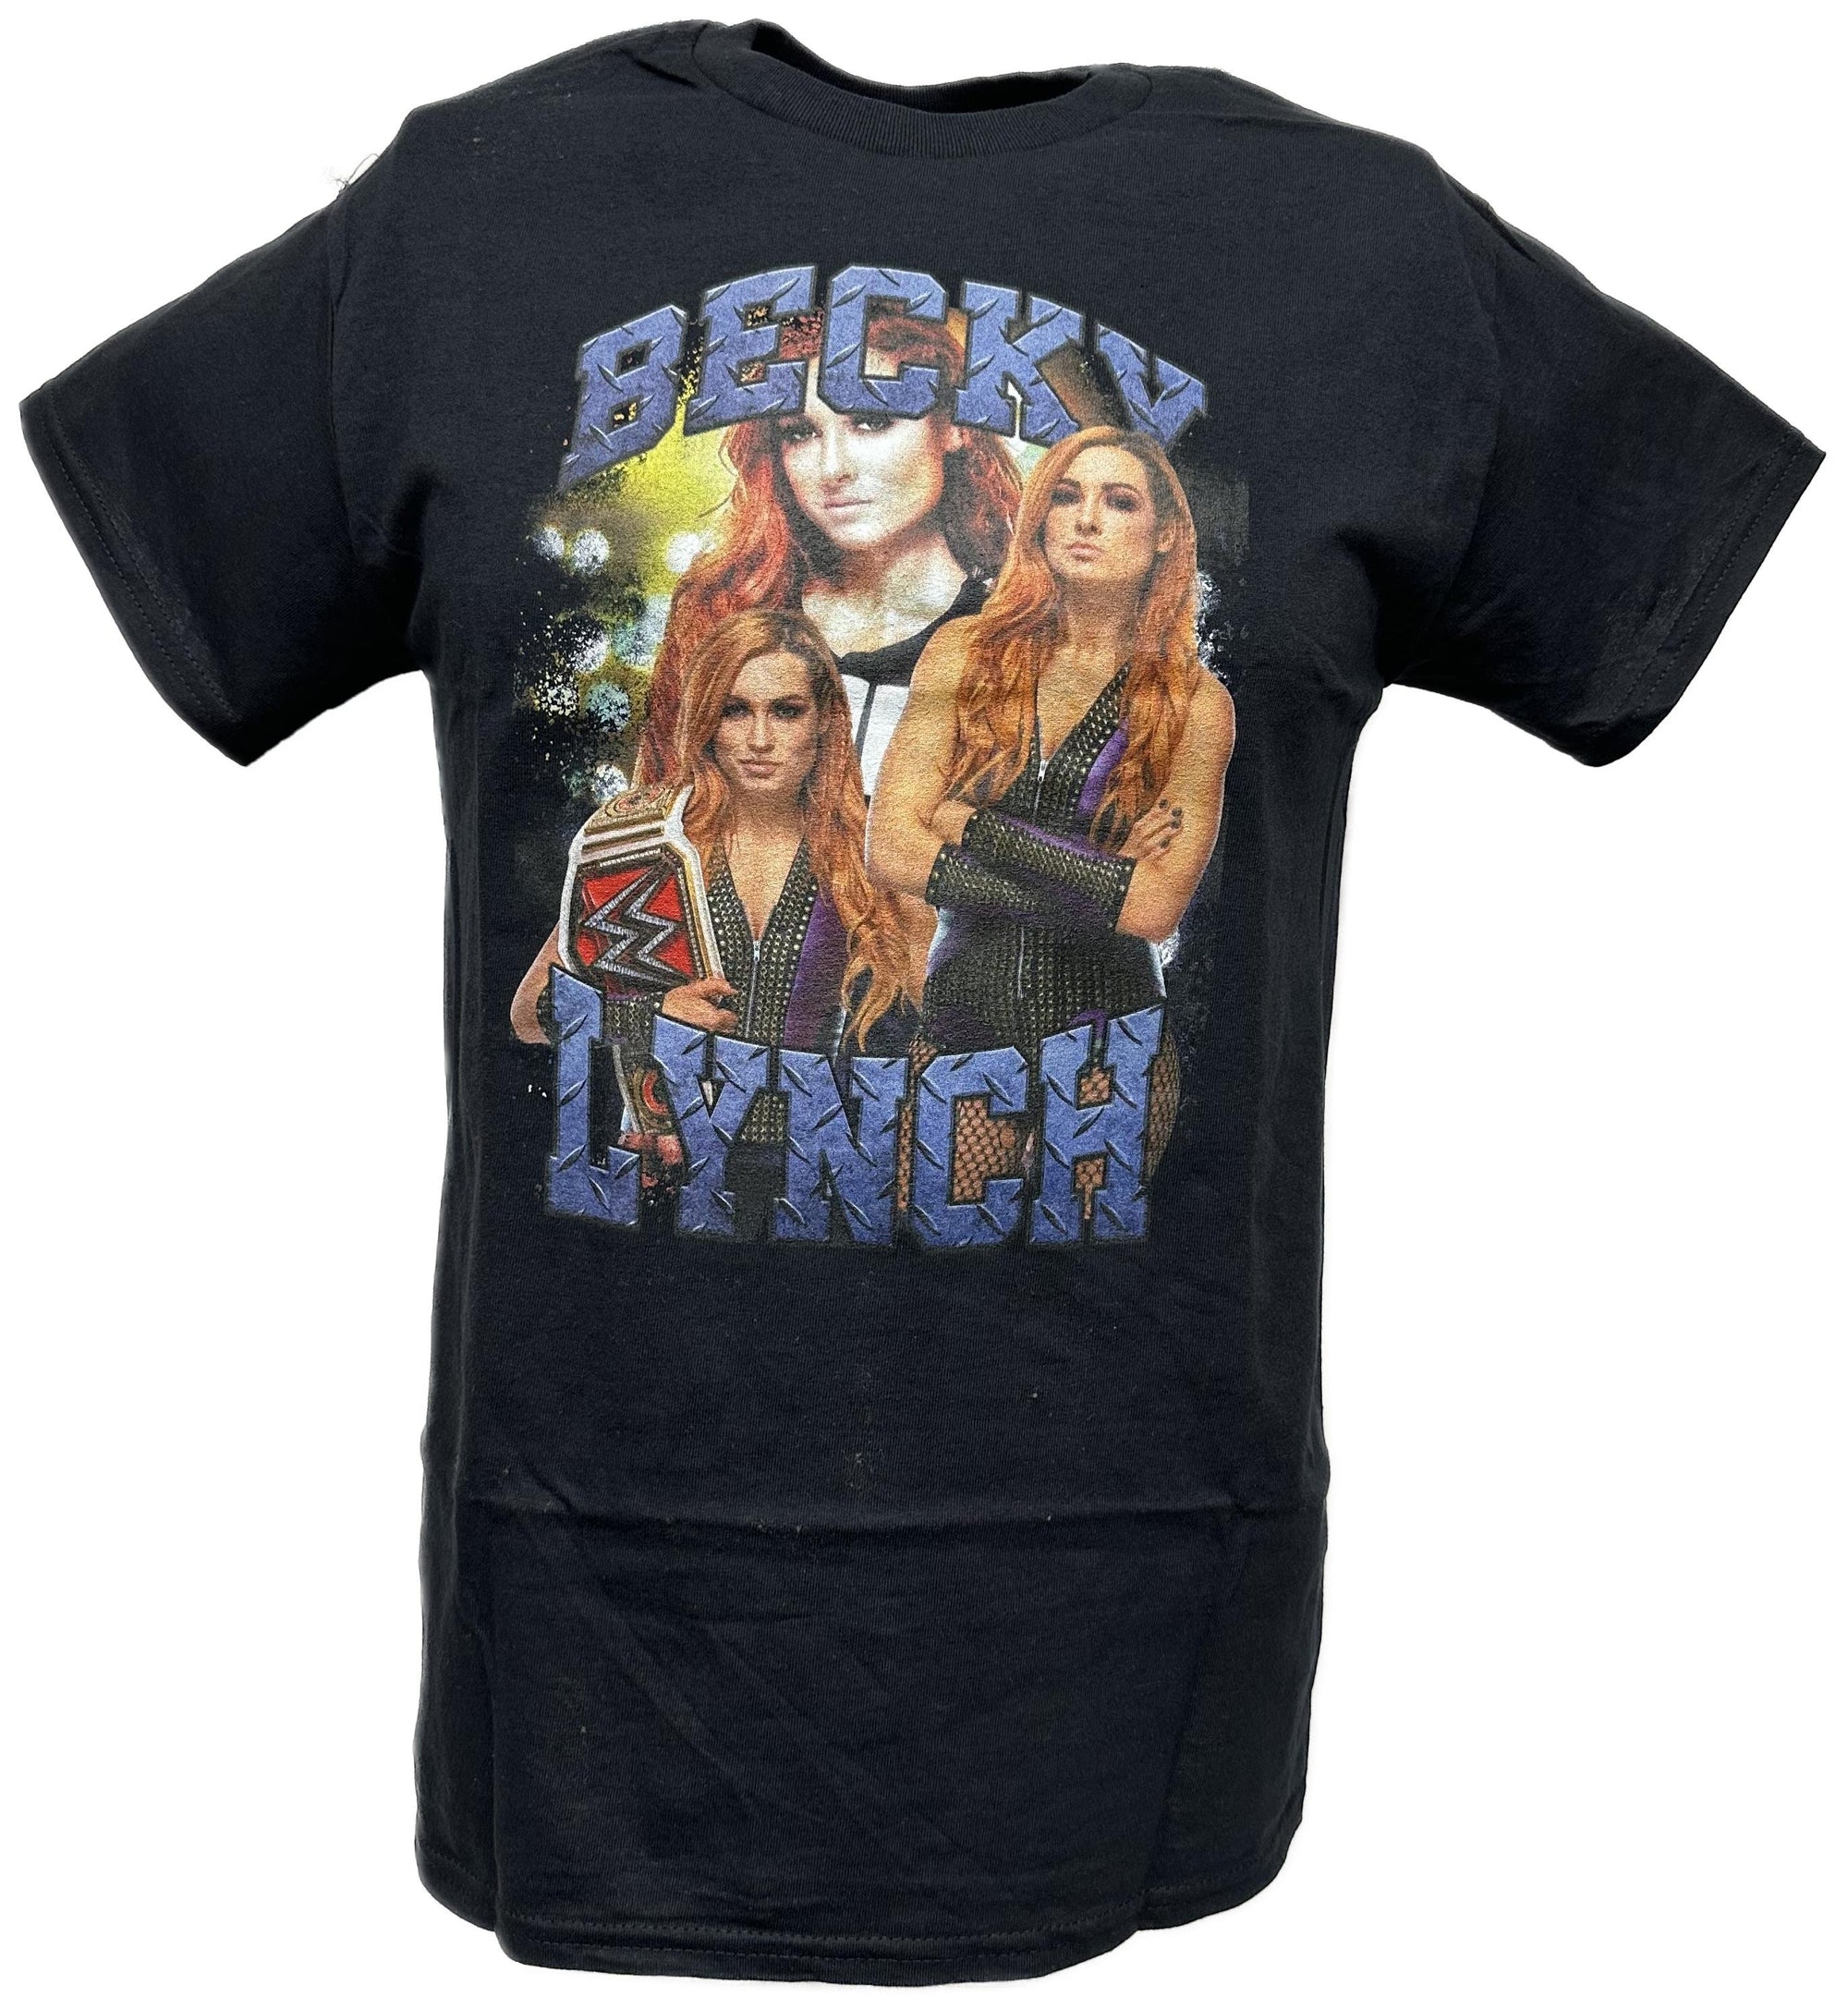 Becky Lynch WWE Superstar Black T-shirt